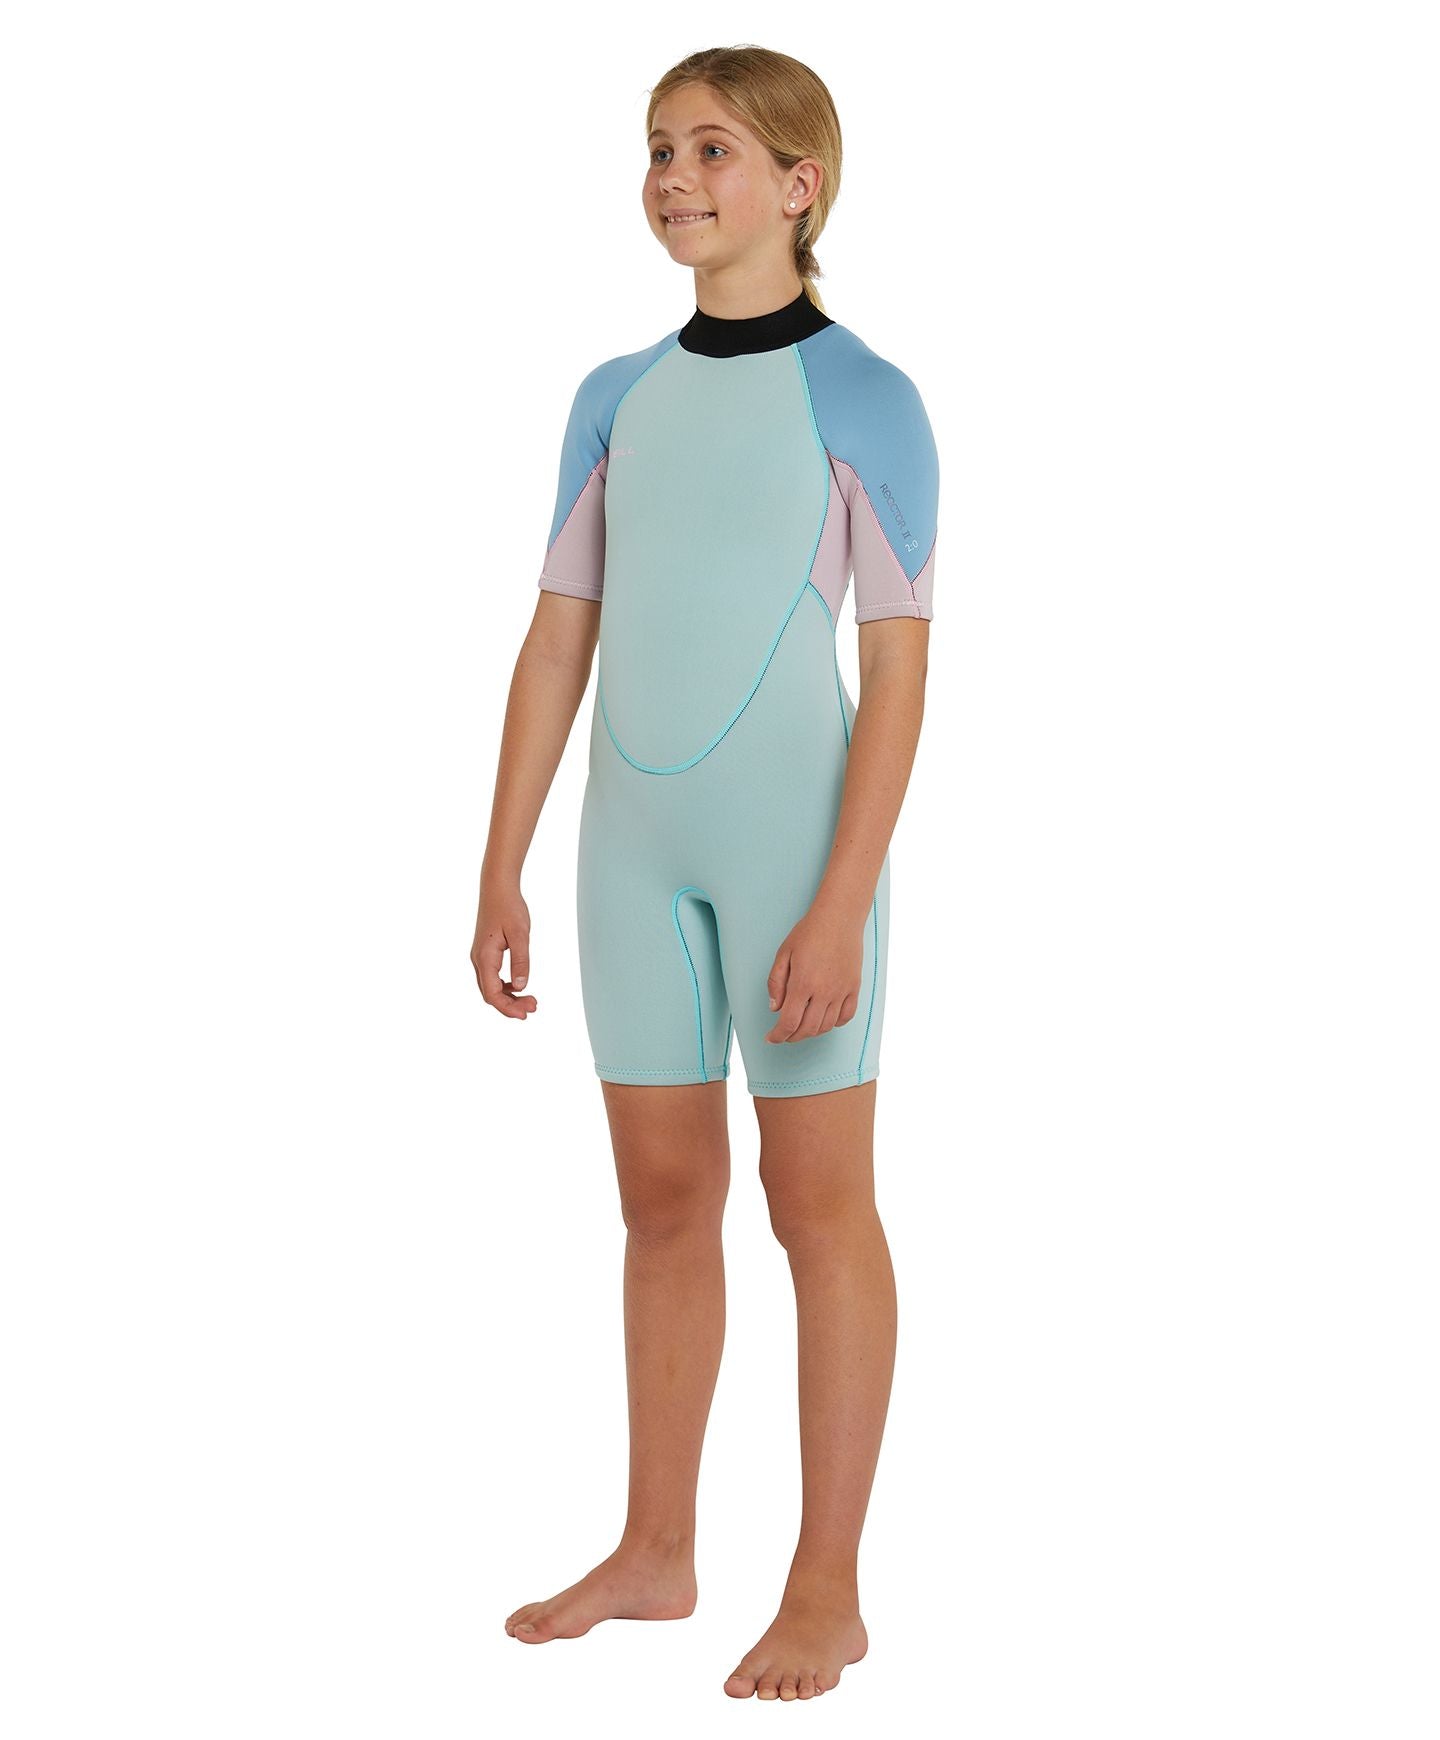 Girl's Reactor II Short Arm Spring Suit Wetsuit - Aqua